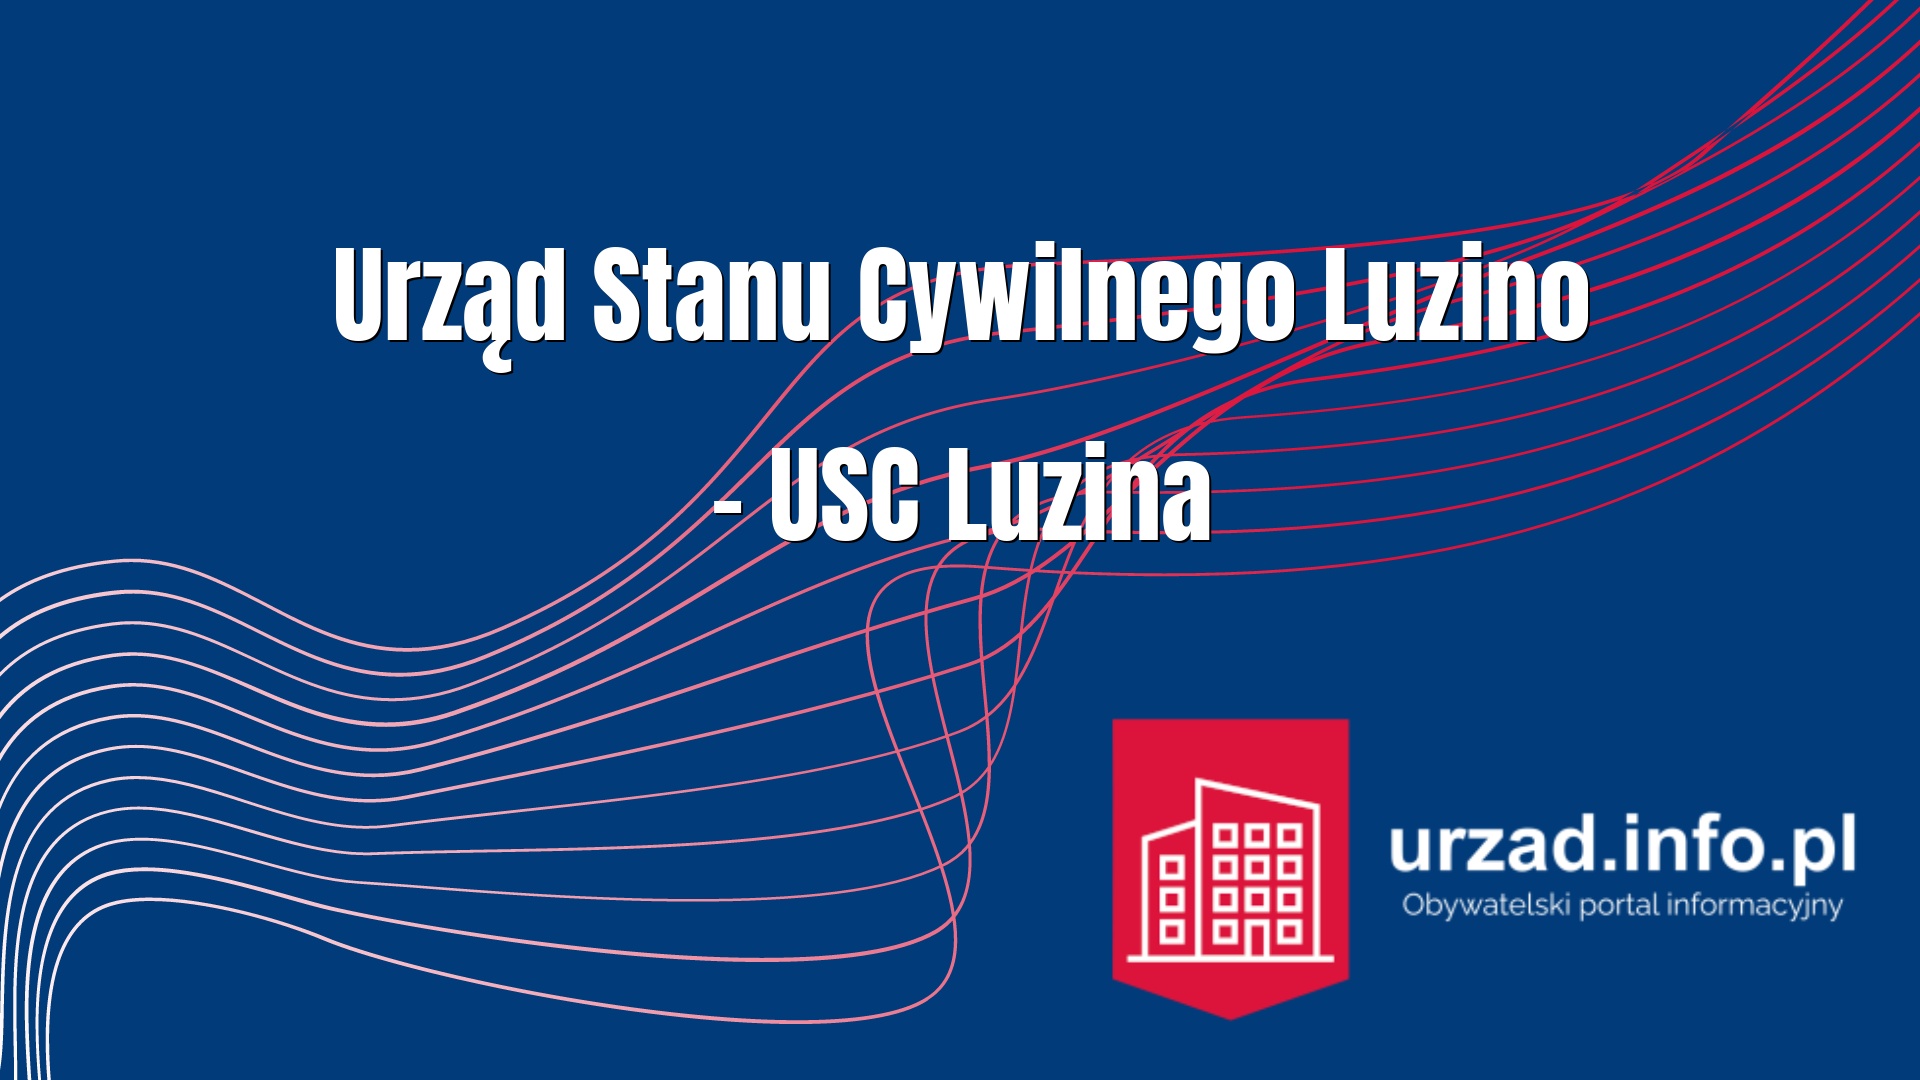 Urząd Stanu Cywilnego Luzino – USC Luzina